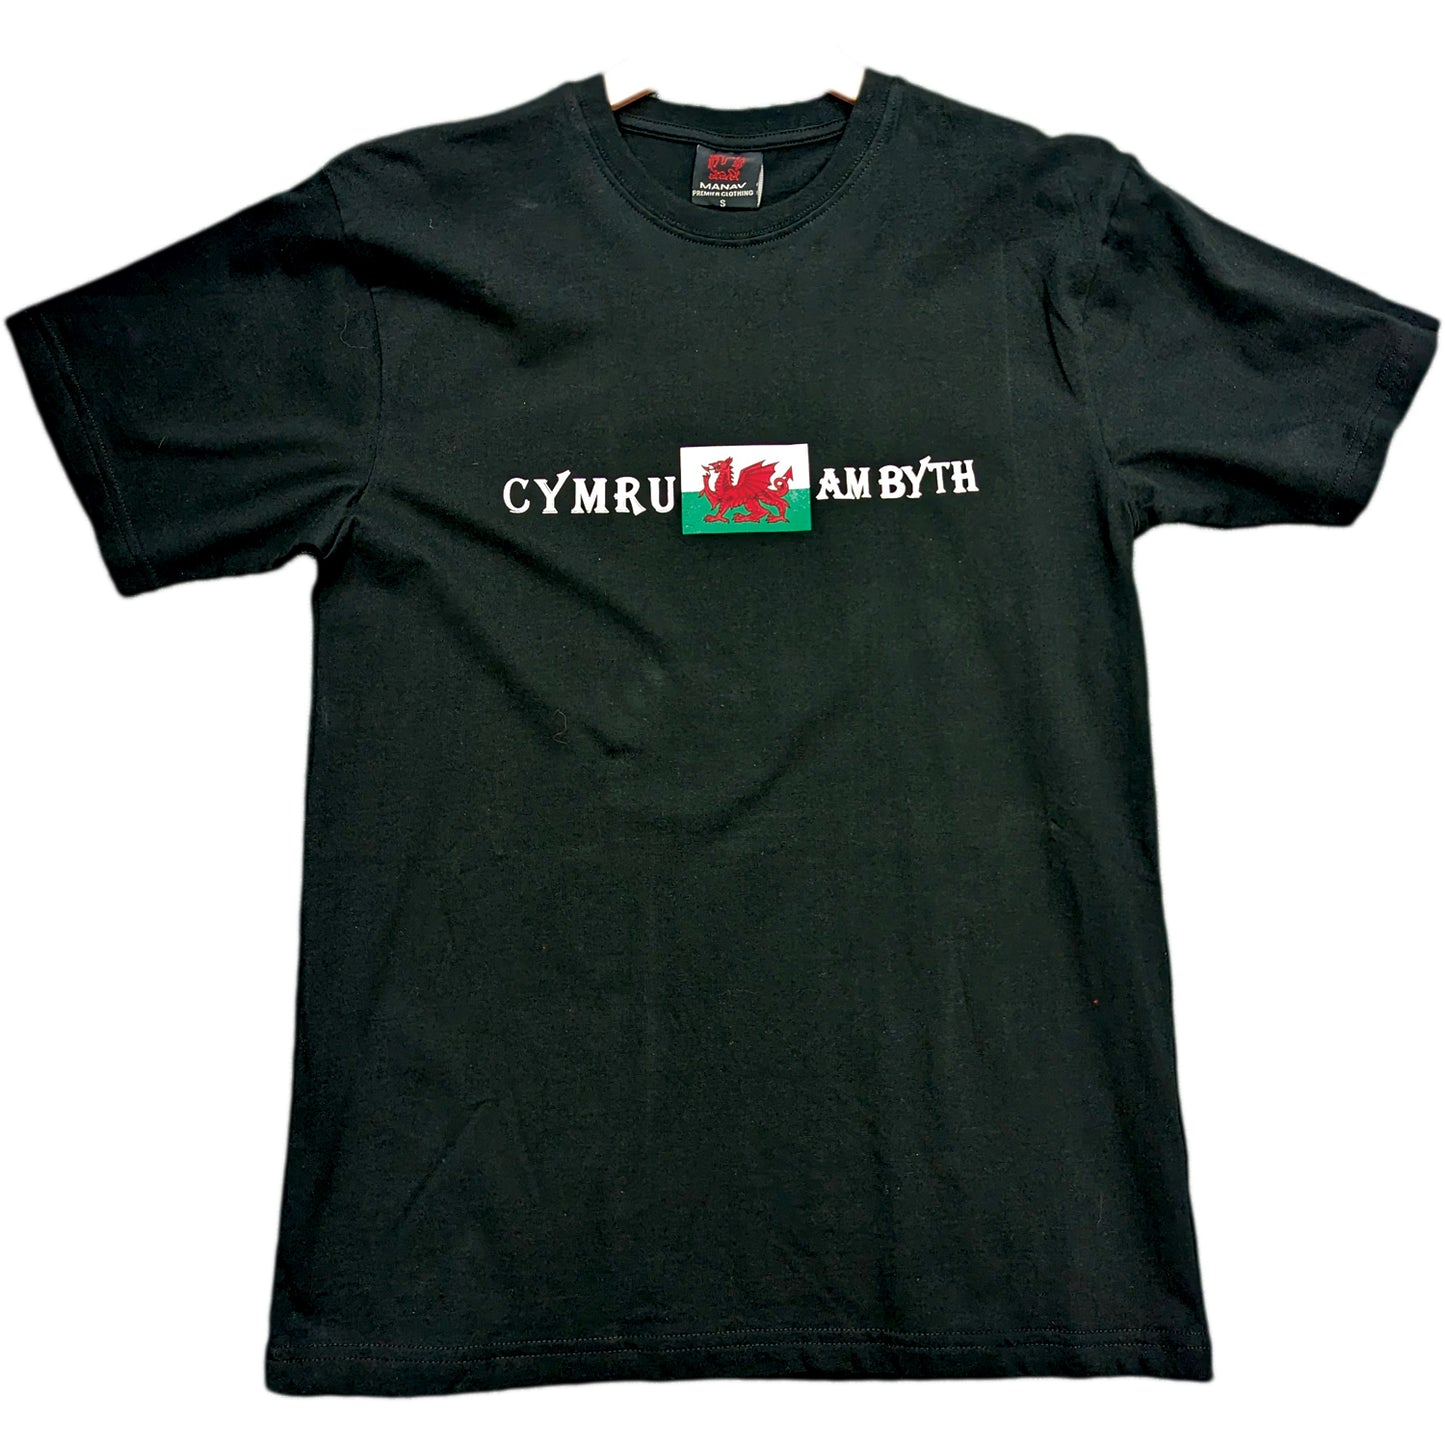 Cymru Am Byth Flag T-Shirt